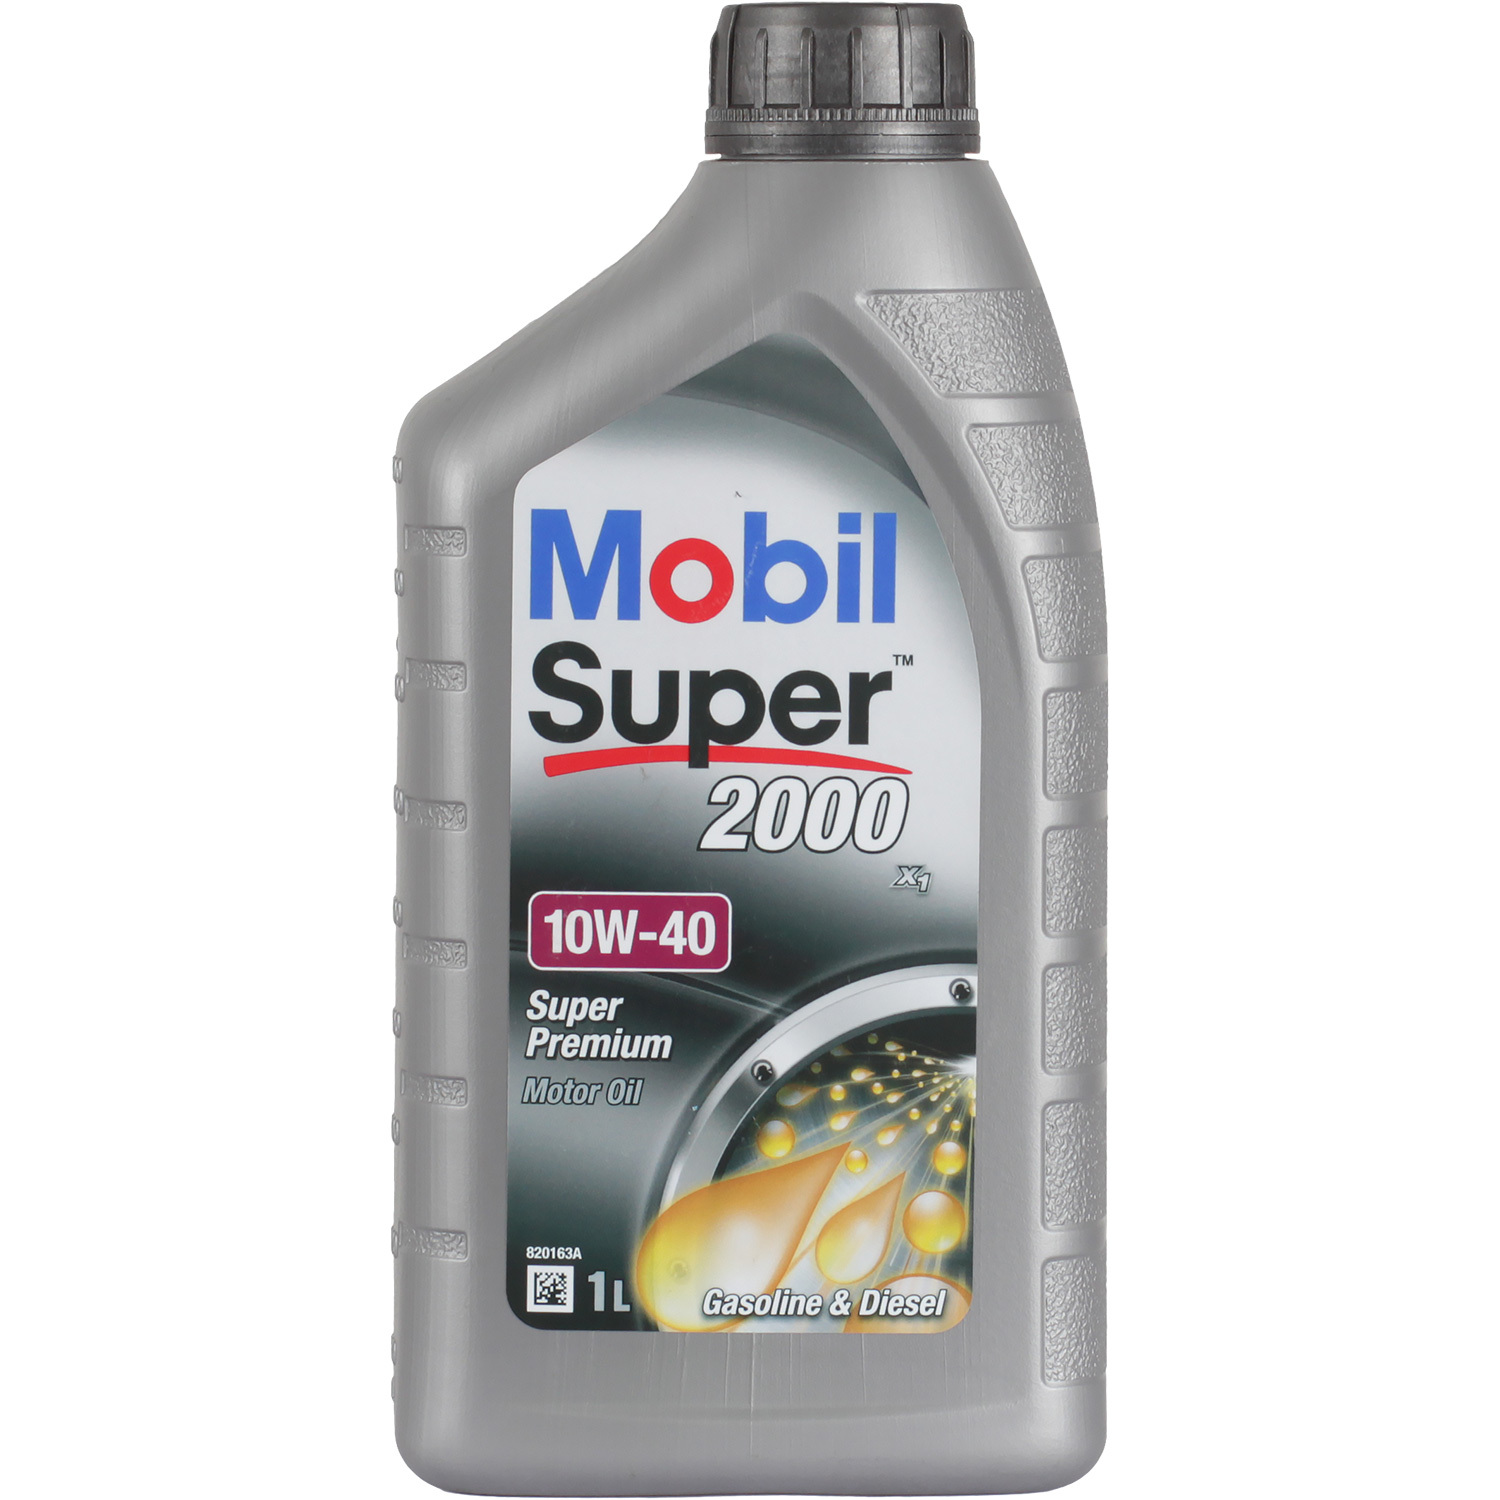 Mobil Моторное масло Mobil Super 2000 X1 10W-40, 1 л синтетическое моторное масло mobil delvac mx extra 10w 40 20 л